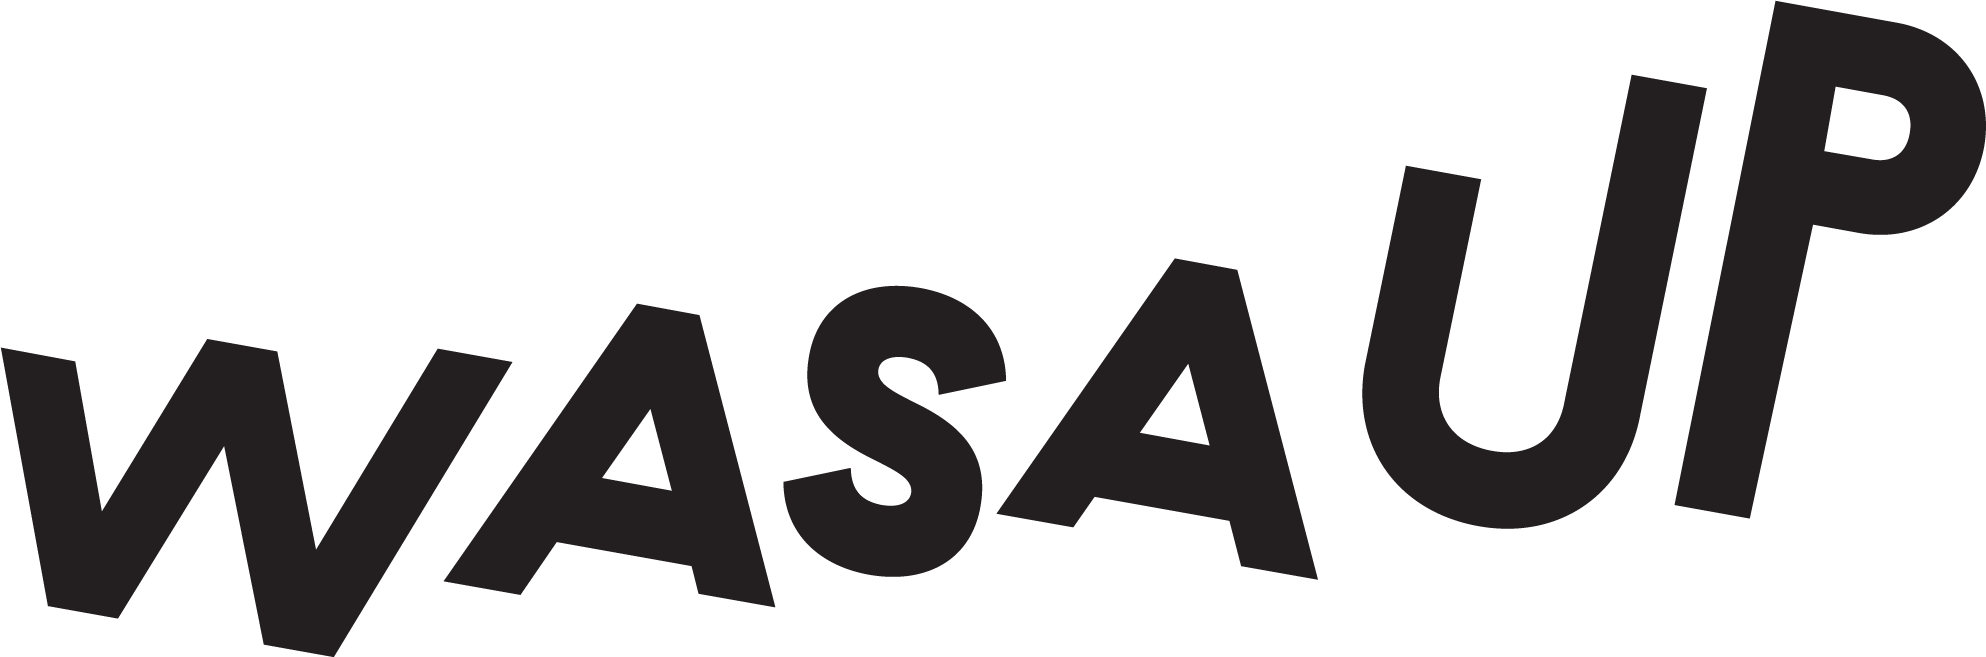 Wasa Up logo